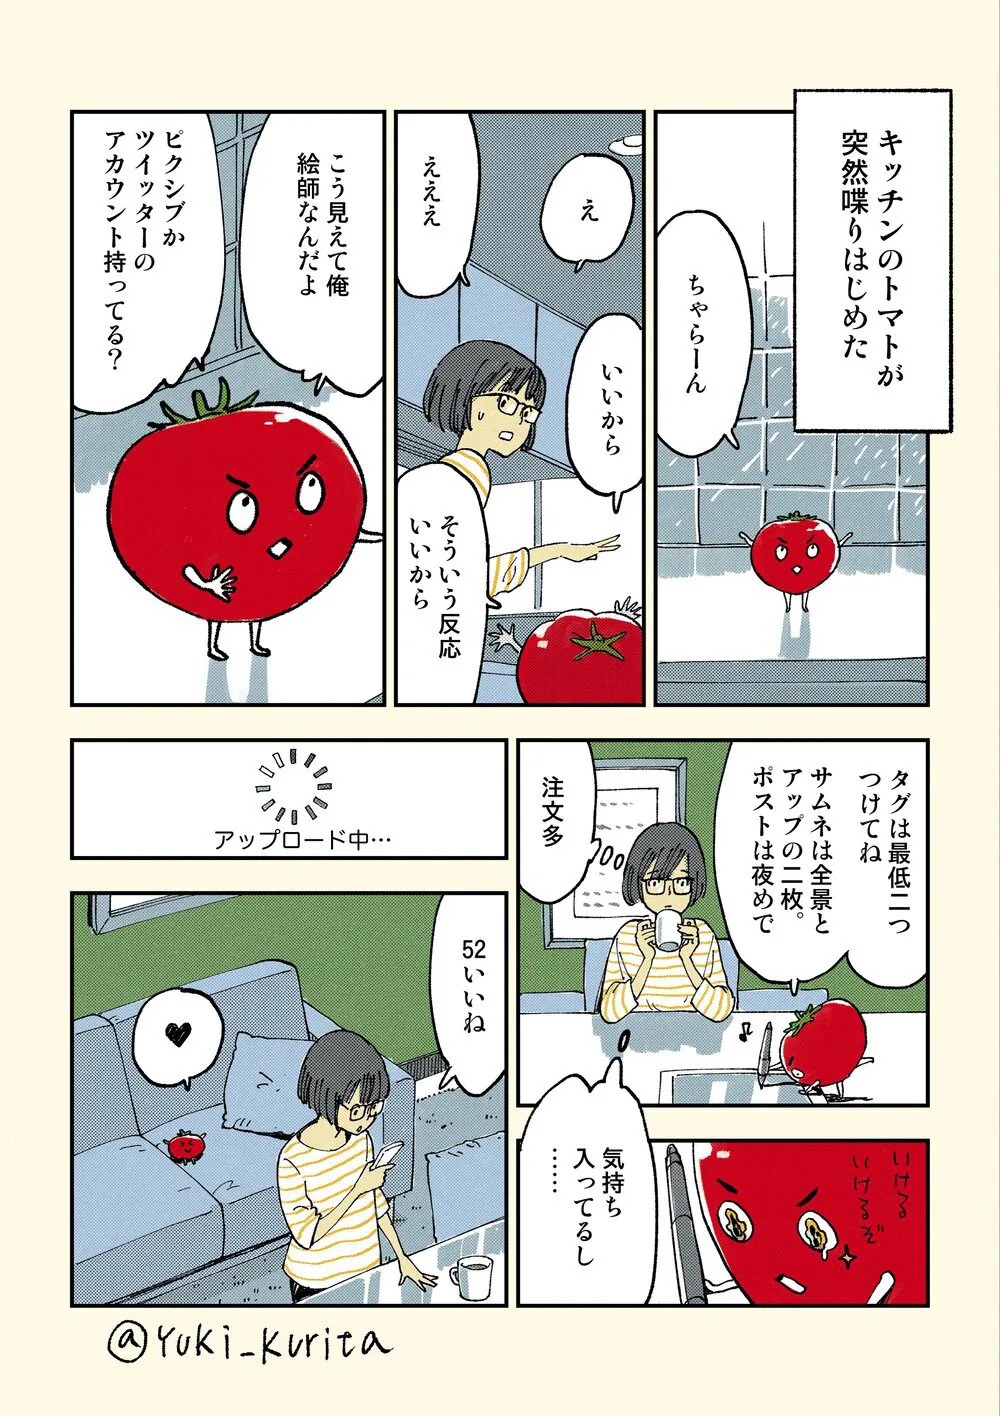 『絵師トマト #1』